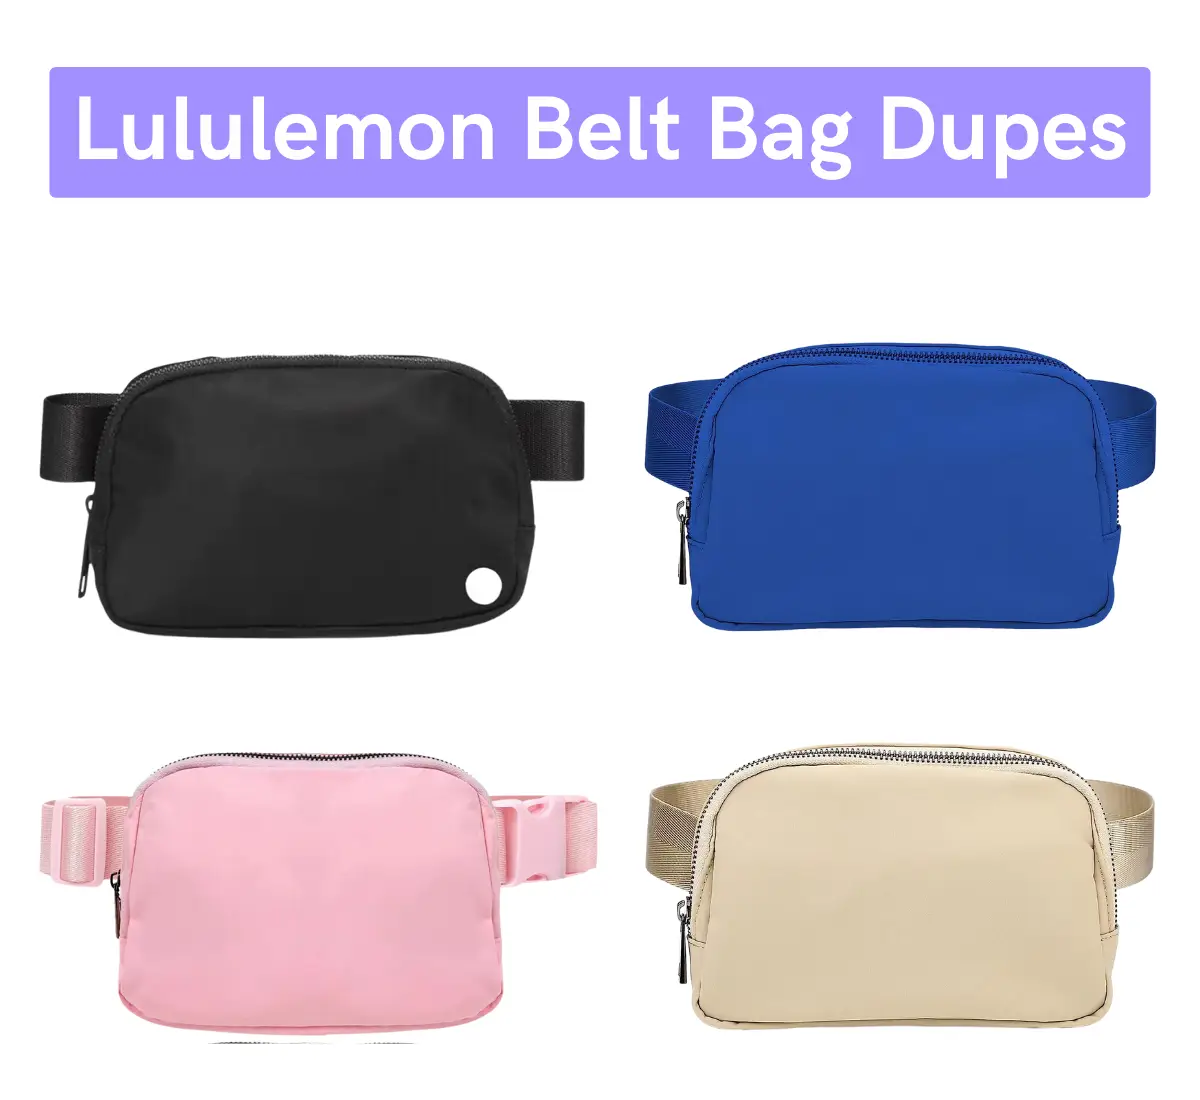 3 best lululemon belt bag dupes (from $9)